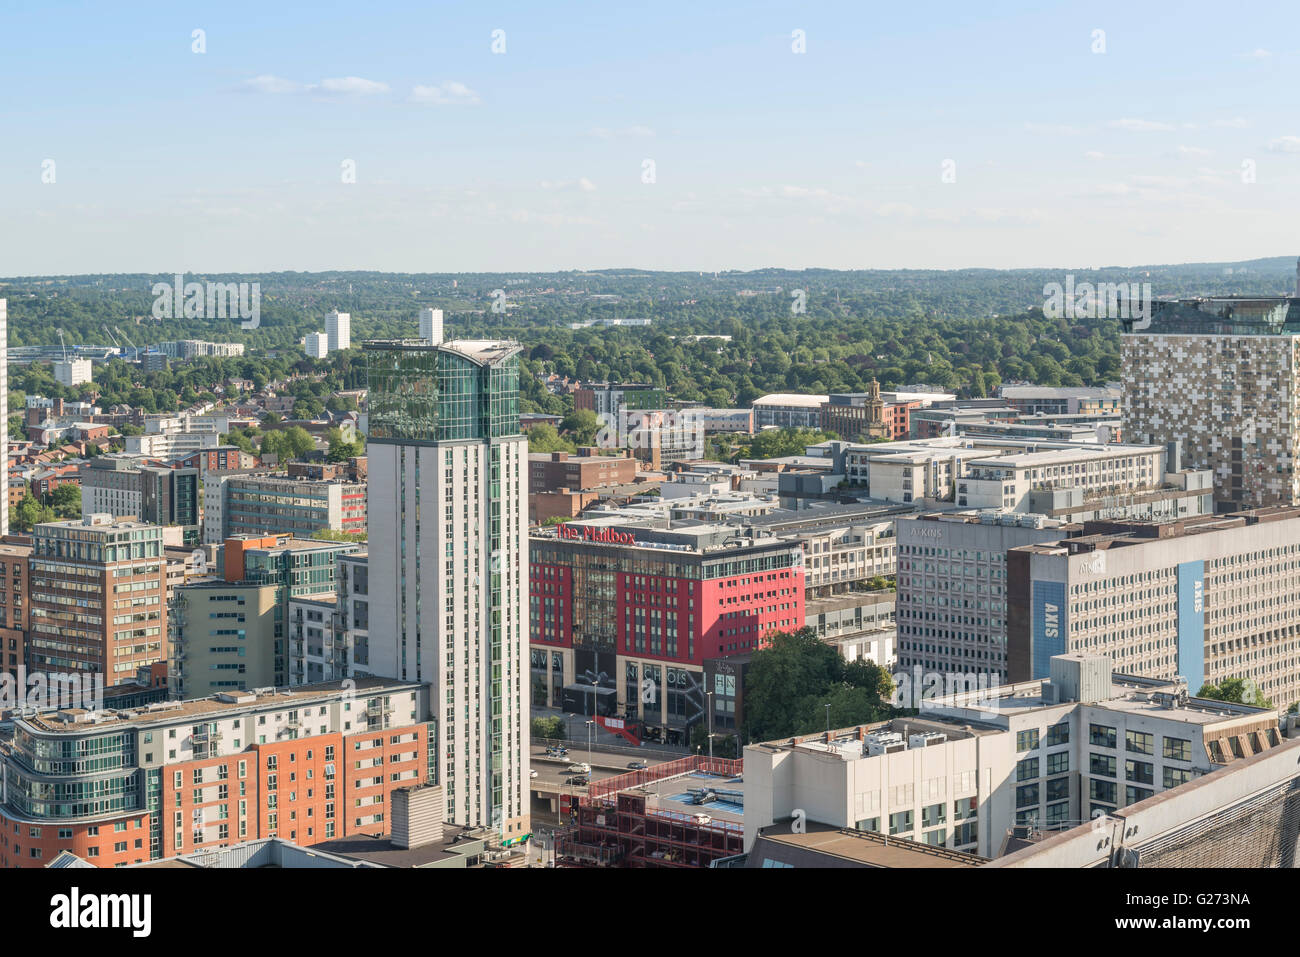 Photographie aérienne du centre-ville de Birmingham, en Angleterre. montrant la boîte aux lettres, le cube et les appartements. Banque D'Images